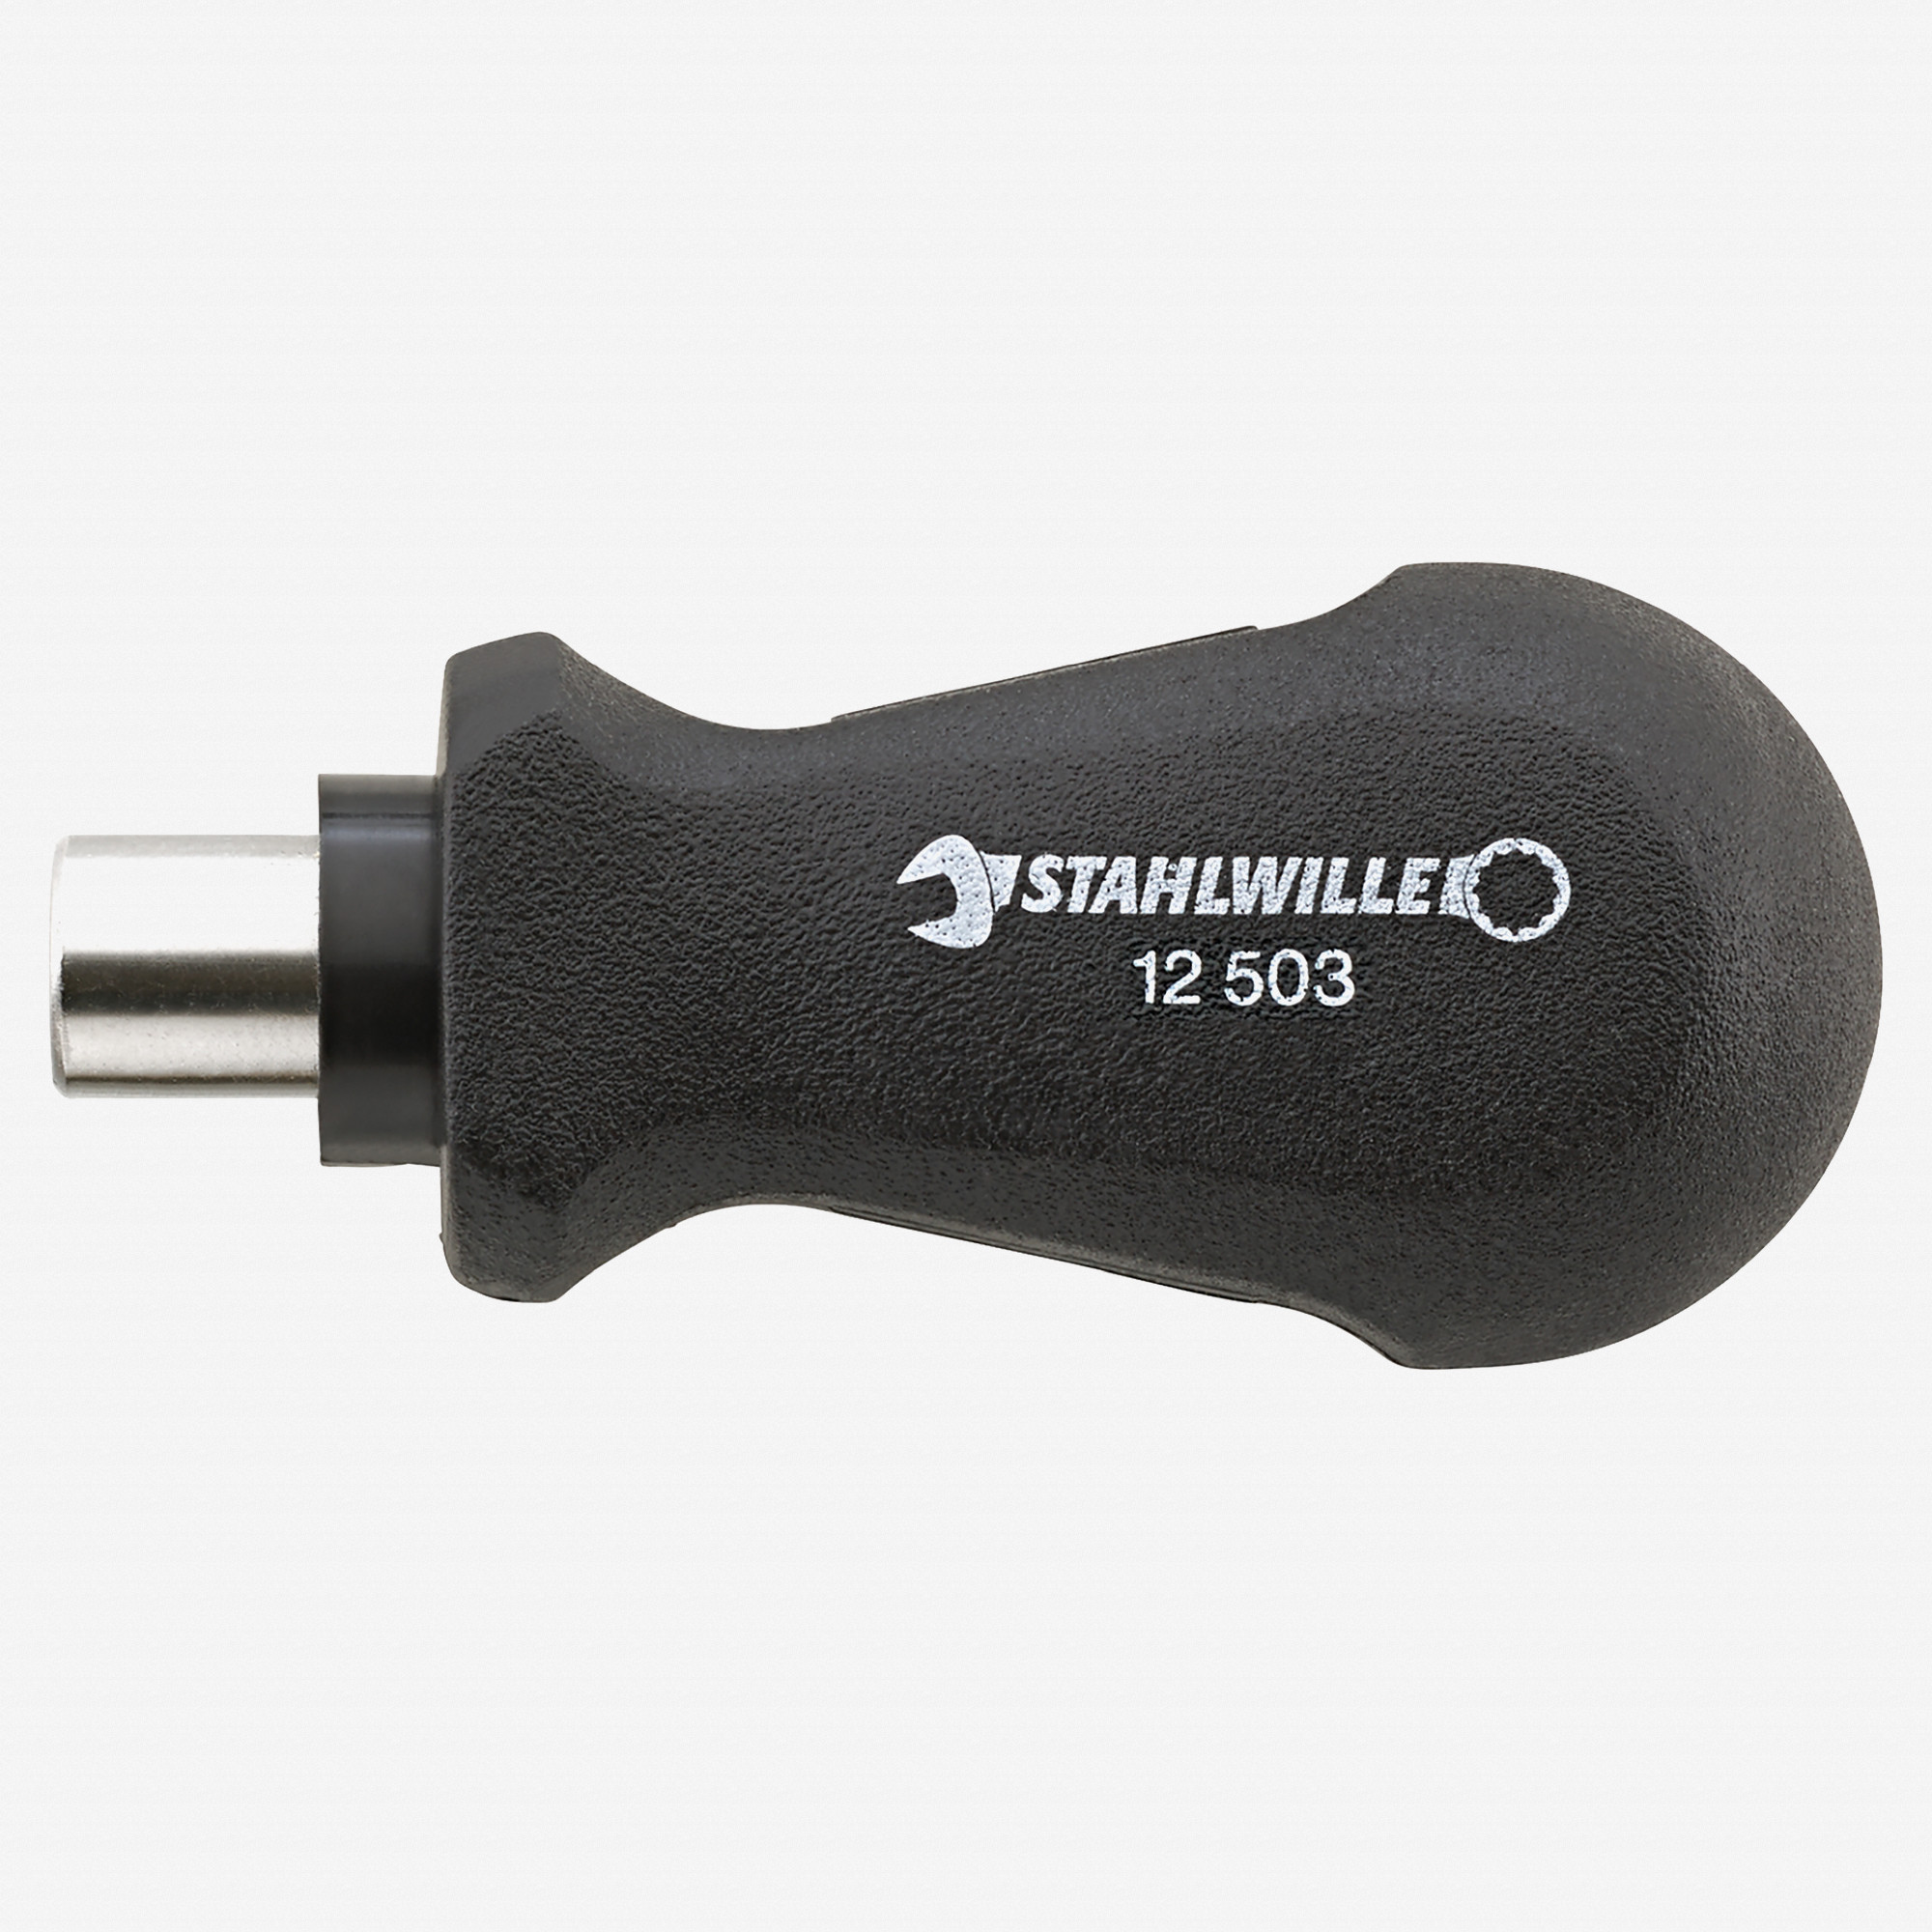 Stahlwille 12503 Stubby 1/4 Bit Holdler - Magnetic